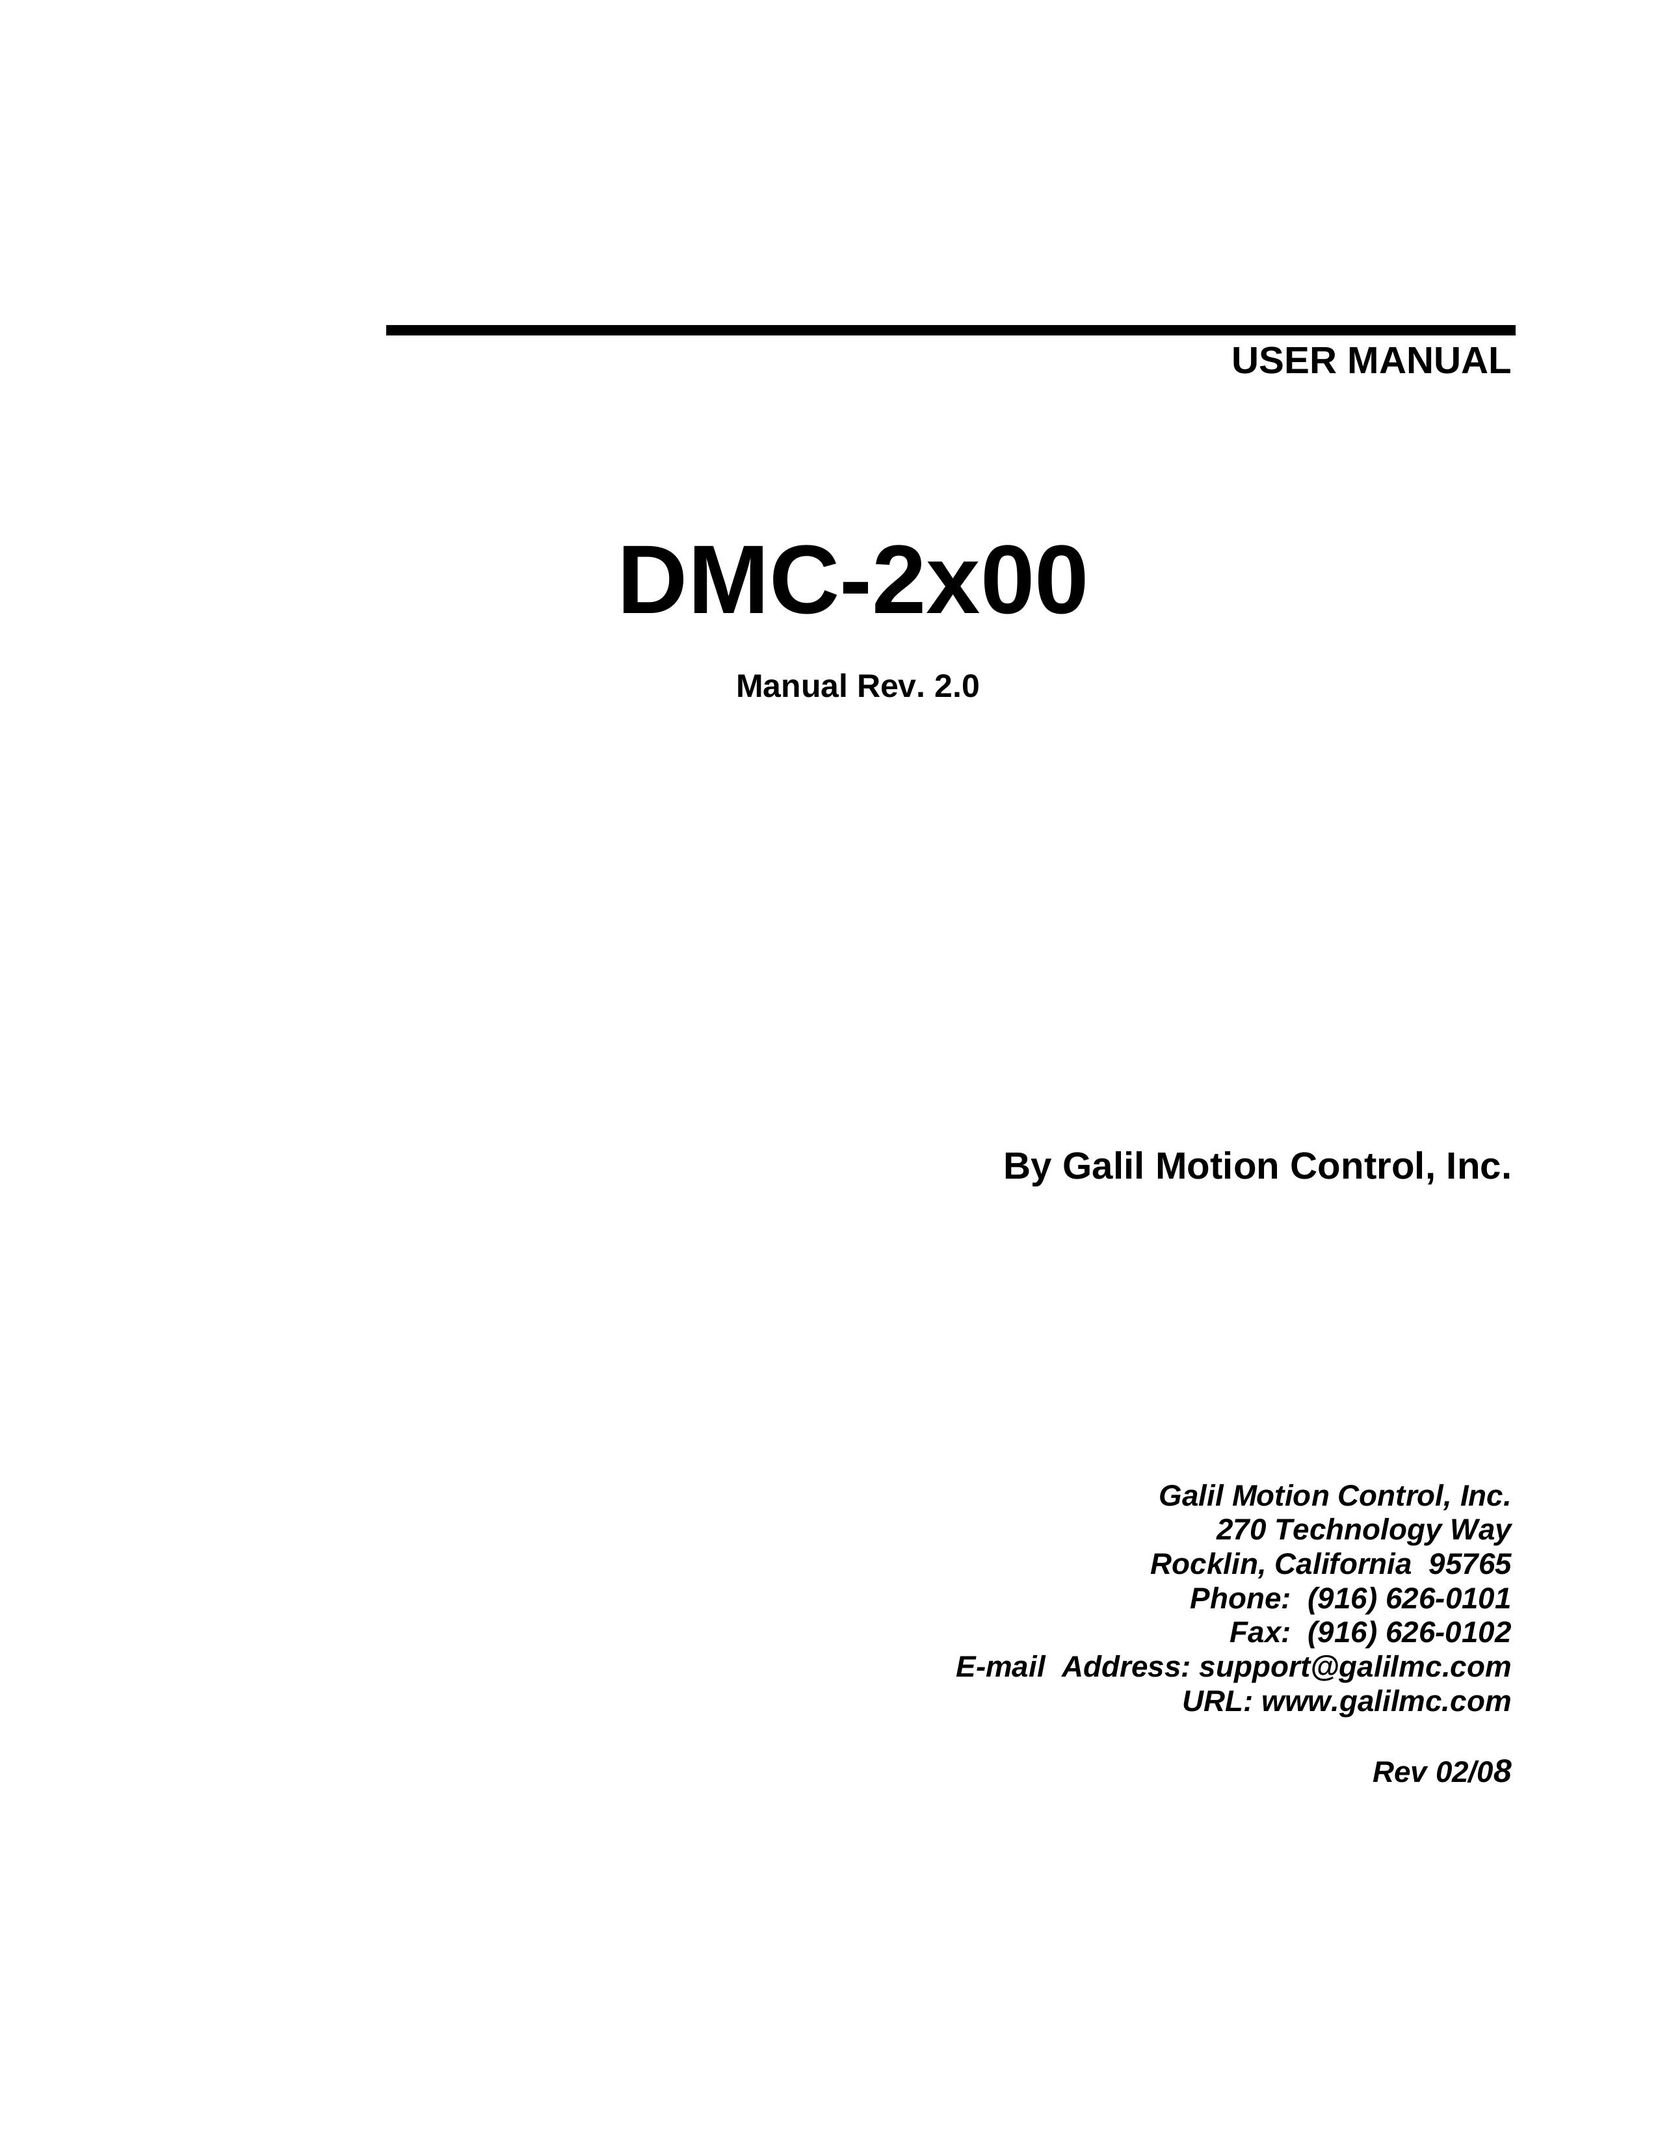 Galil DMC-2X00 Projector User Manual